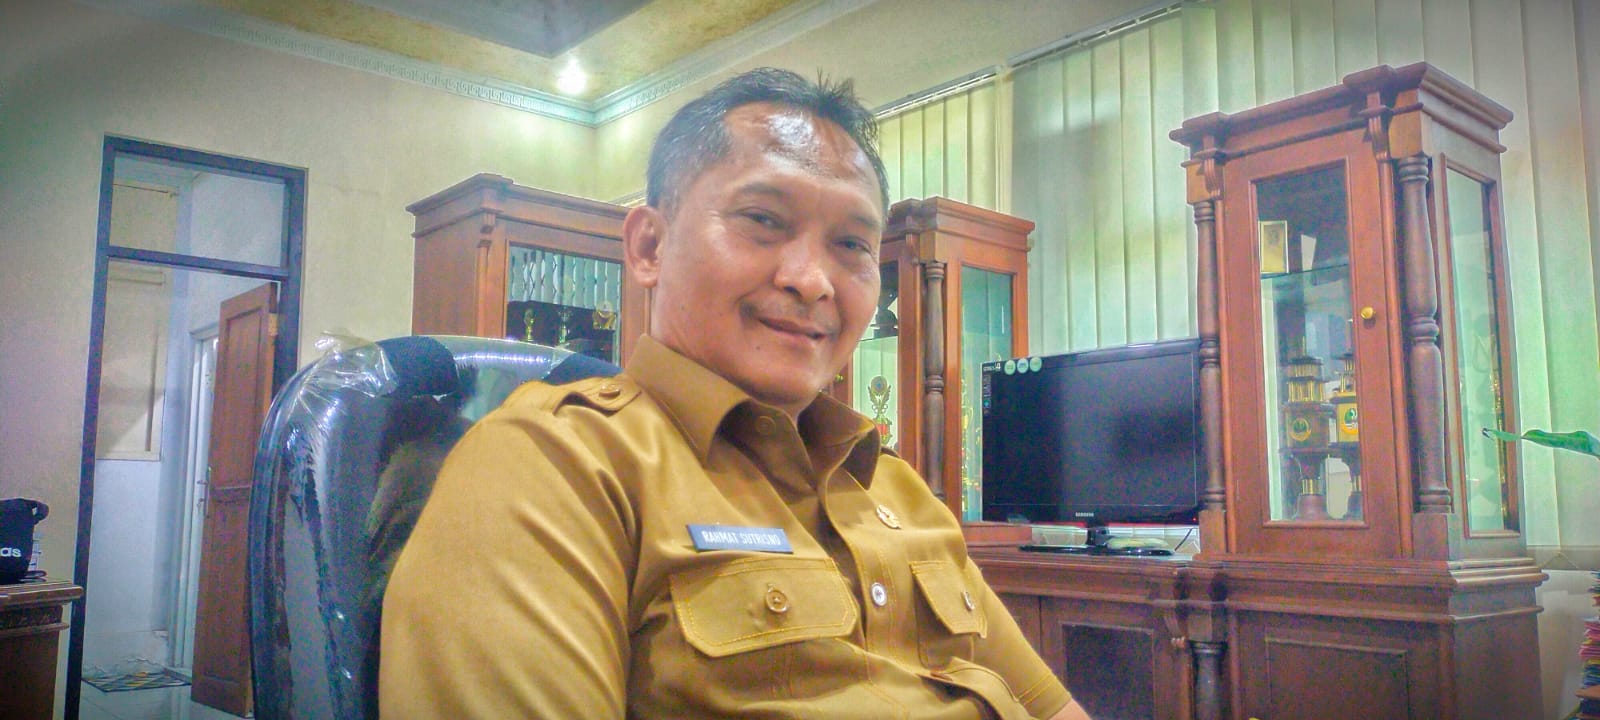 Rahmat Siap Jika Diusulkan Jadi Pj Bupati Cirebon, Kinerja DPRD Disorot